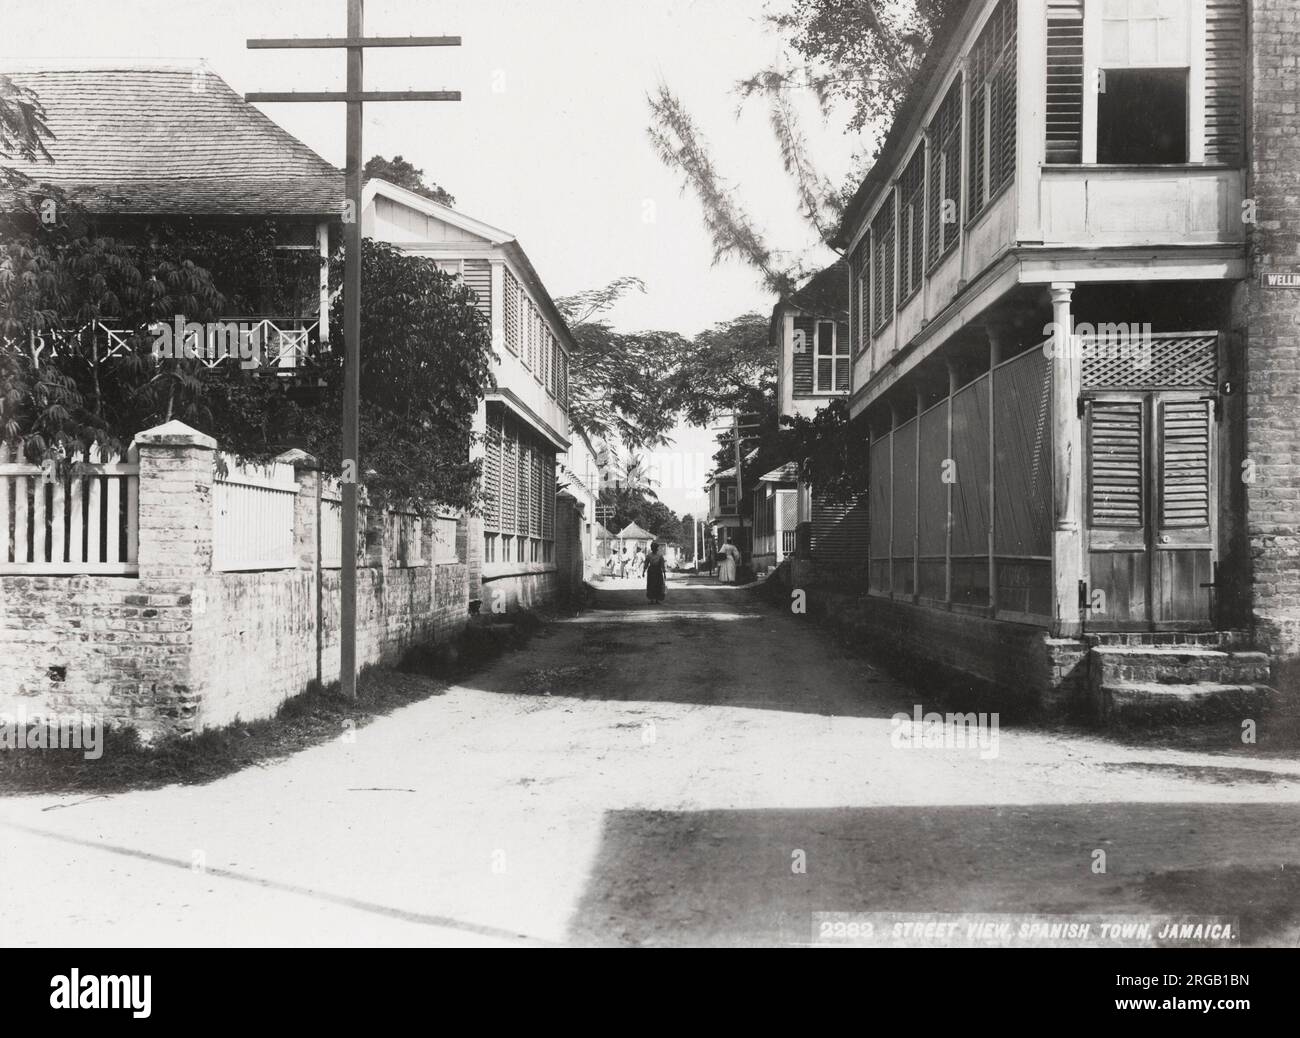 Photo de la fin du XIXe siècle : rue dans la ville espagnole, Jamaïque, Antilles. Banque D'Images